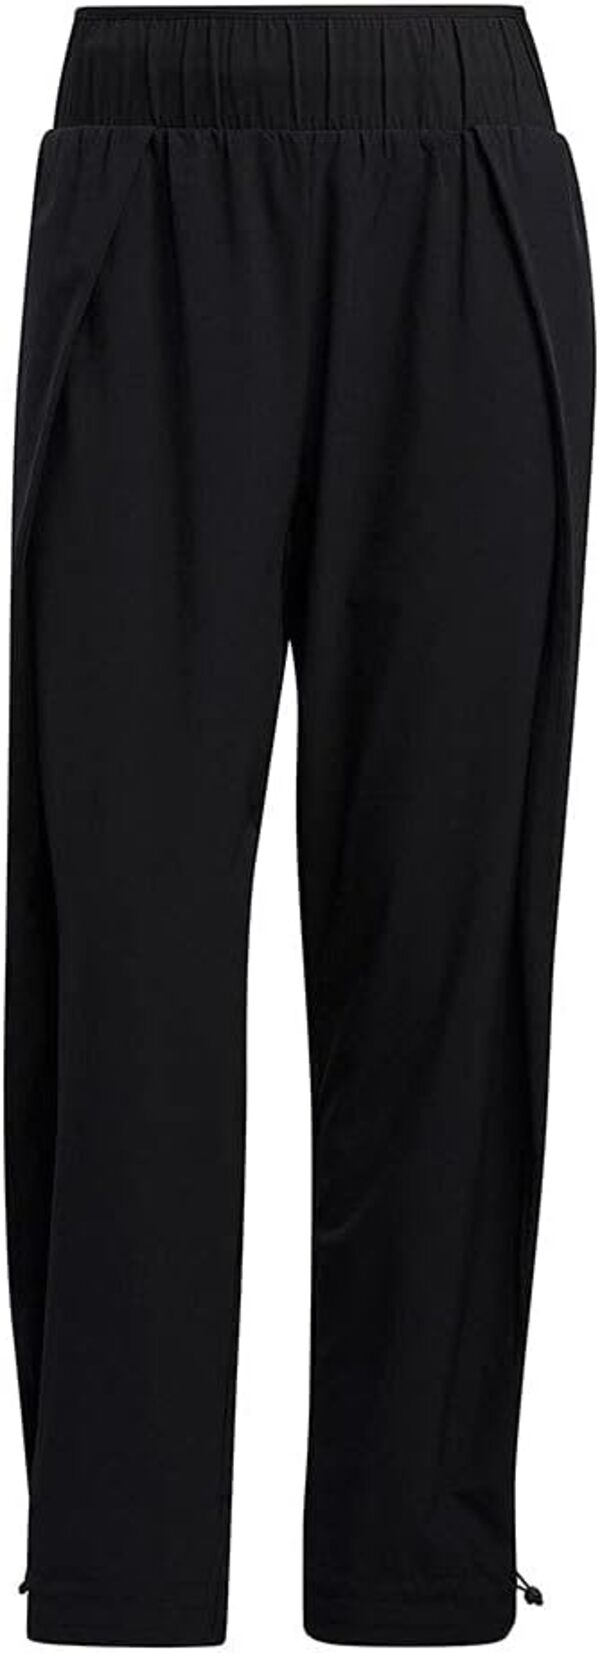 Спортивные брюки женские Adidas Originals GL0683 черные L